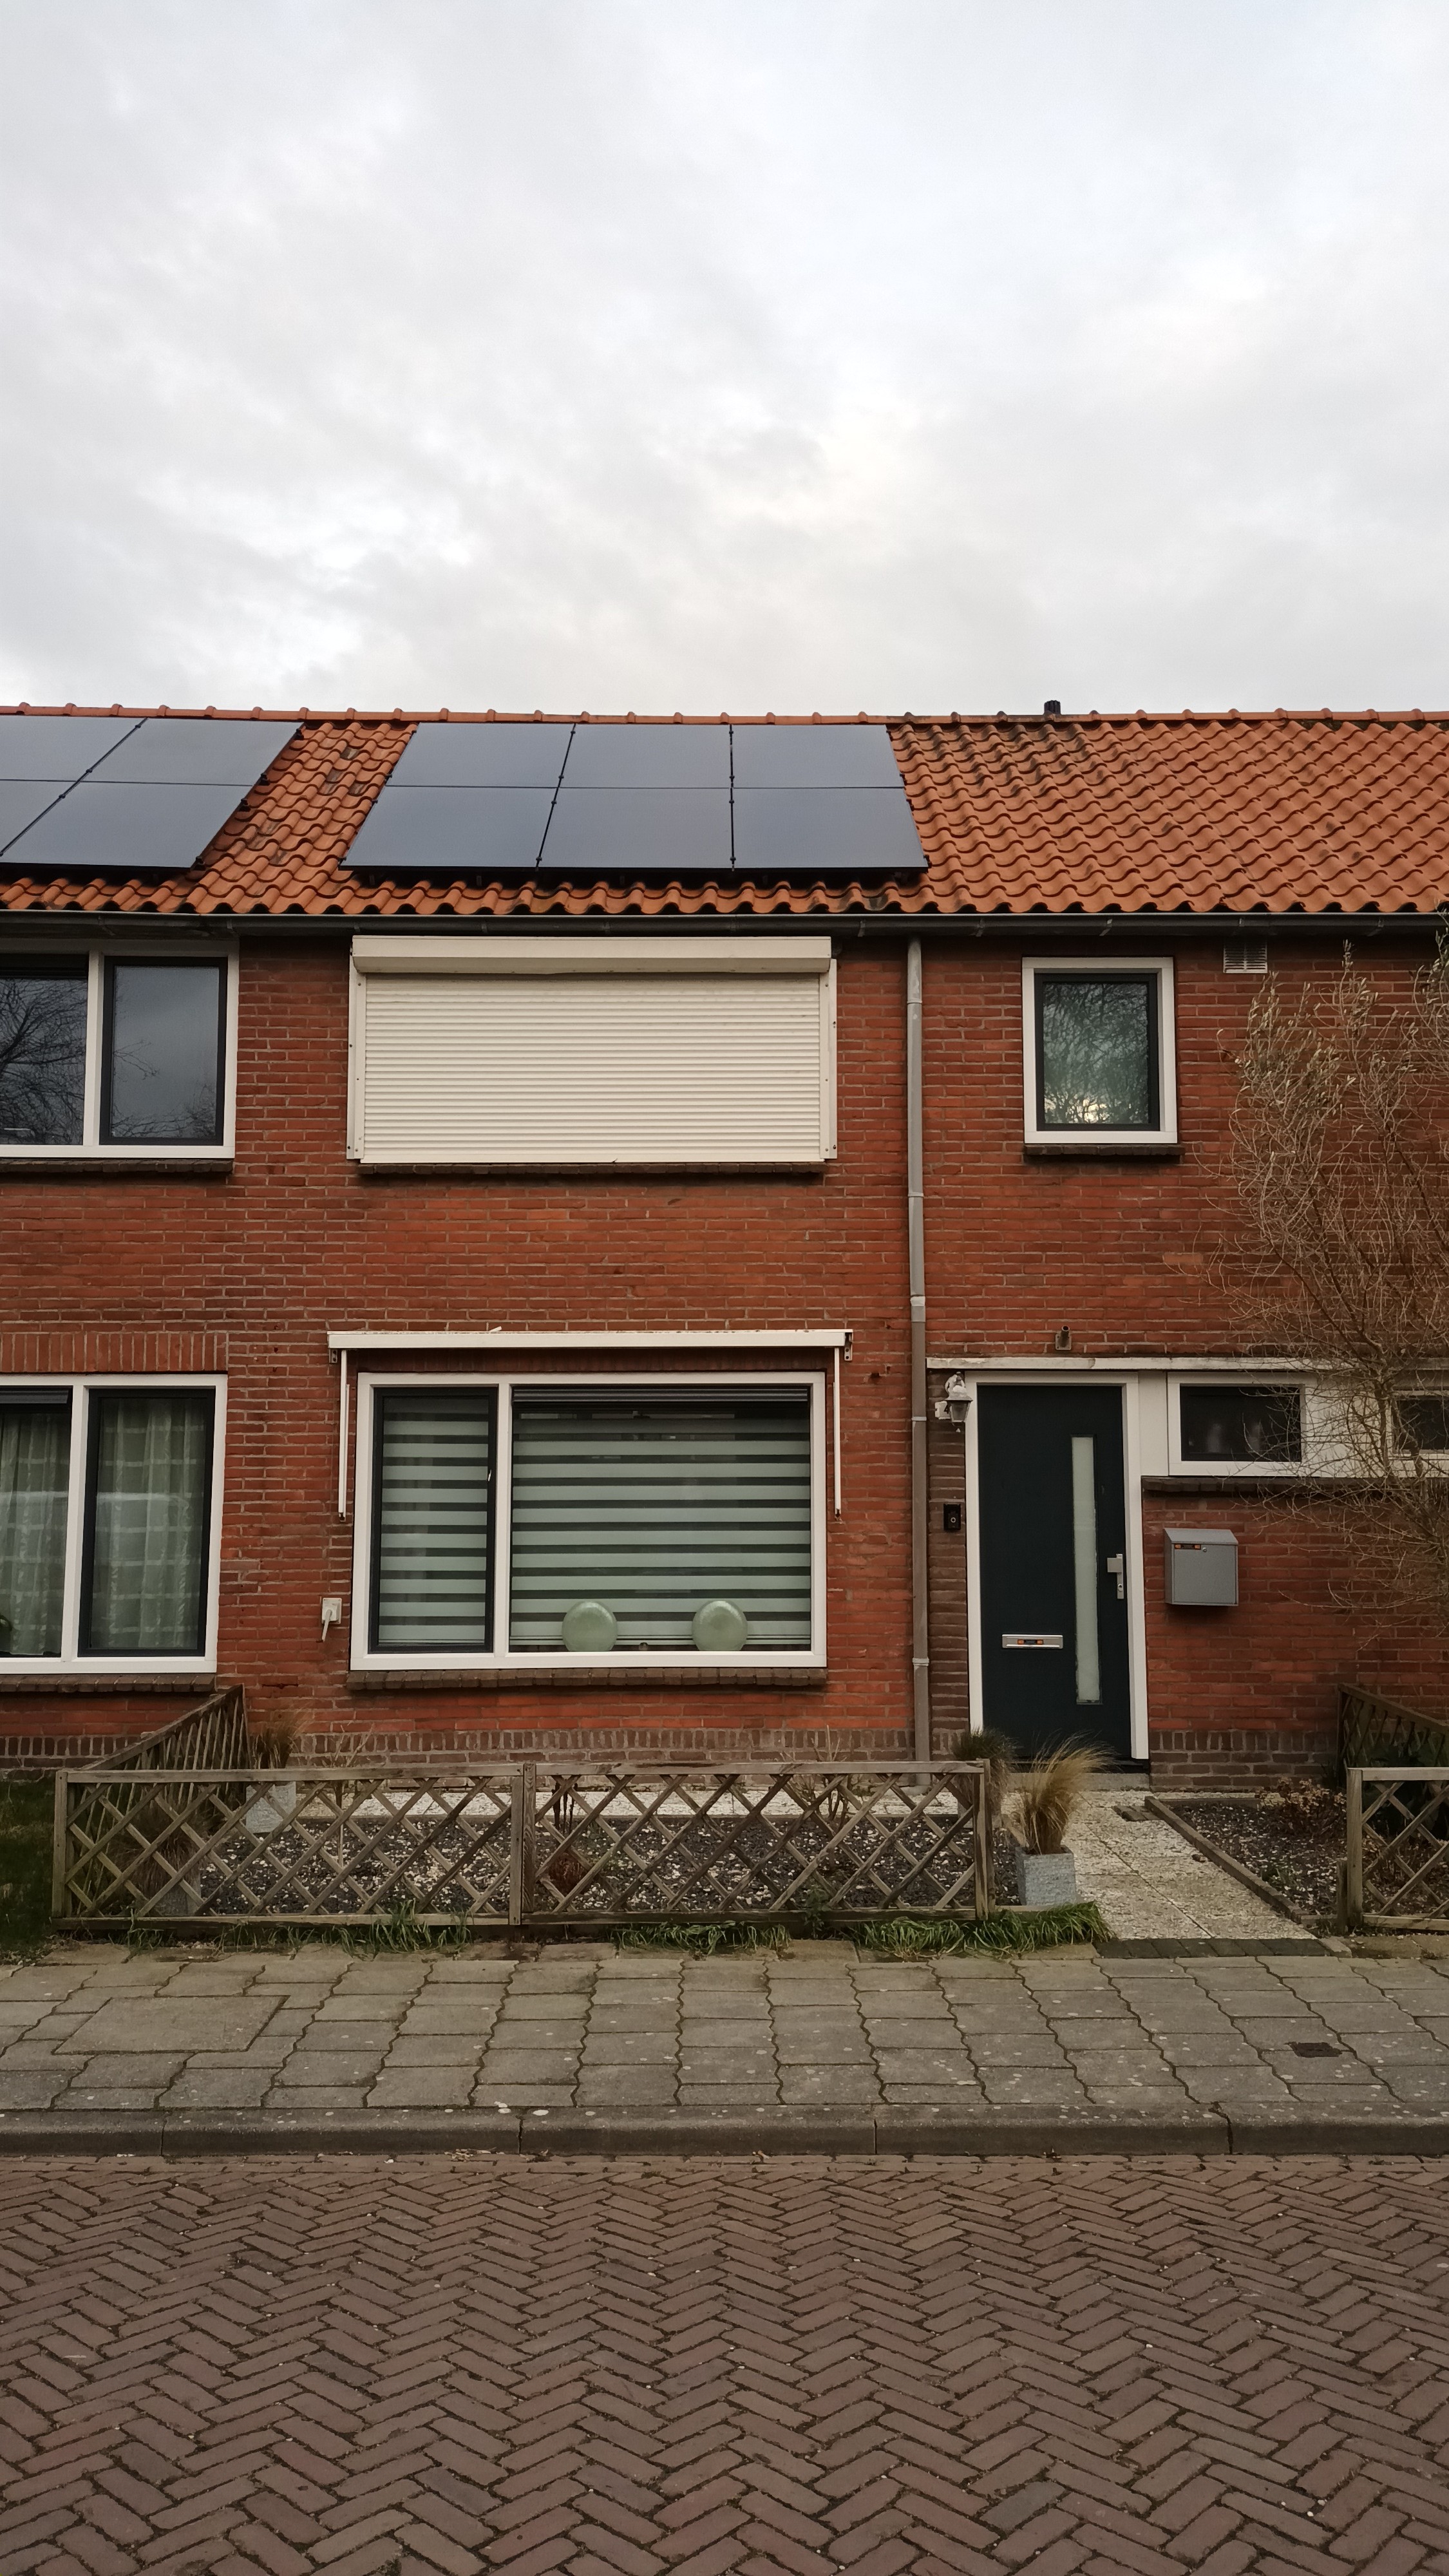 Radermacherstraat 4, 4341 GX Arnemuiden, Nederland